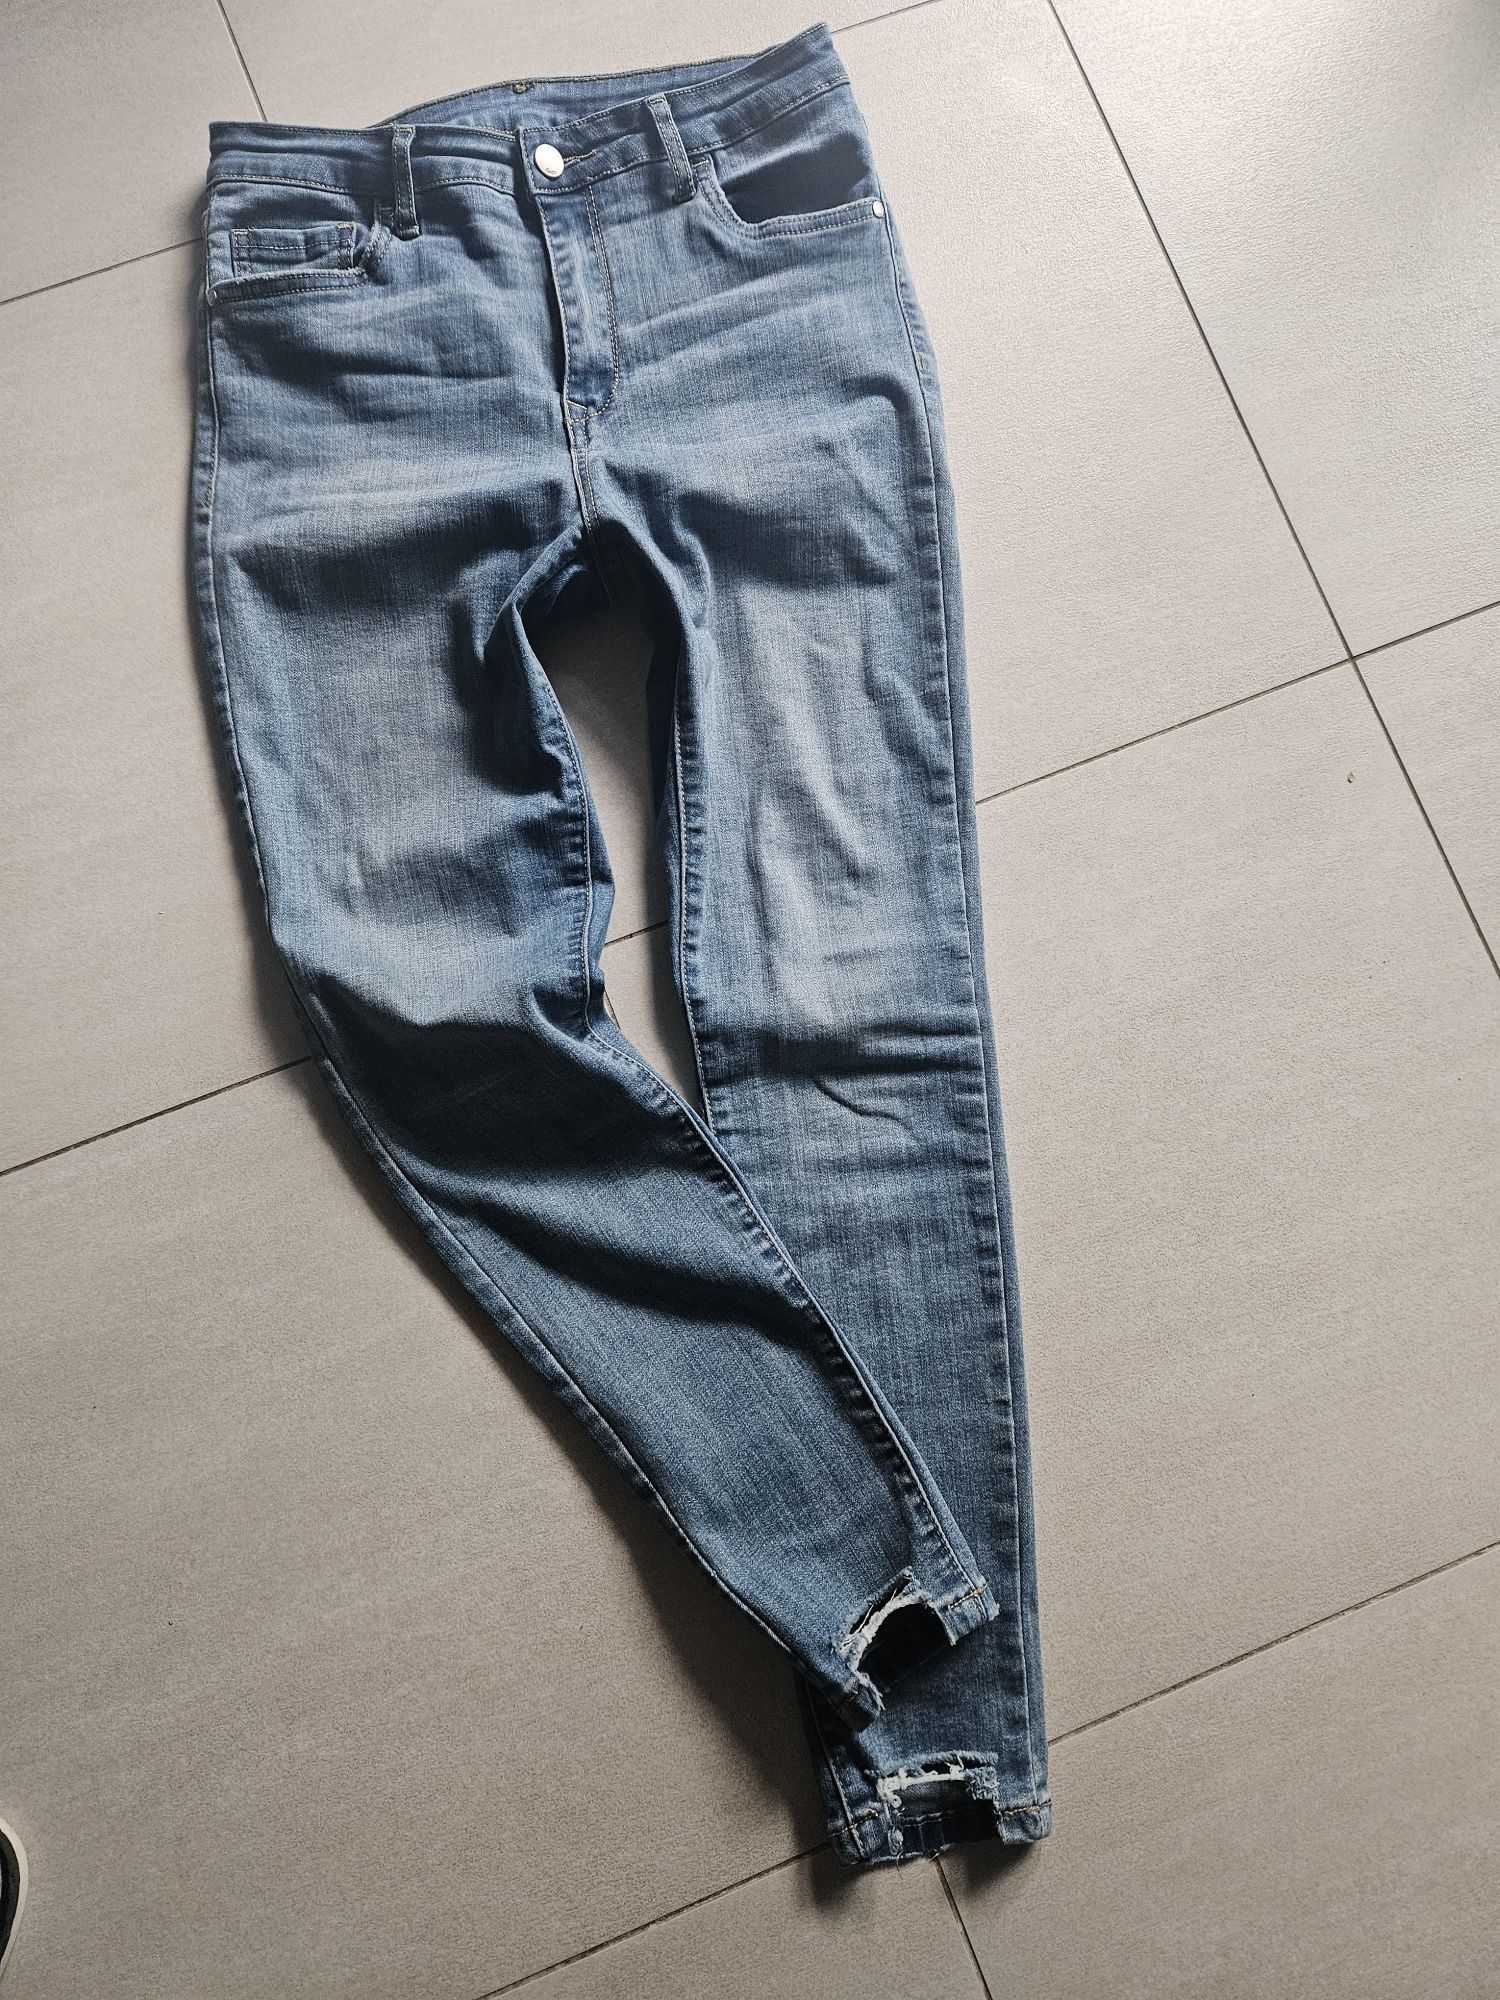 5 par spodni jeansowychr M 38,  5 z nich to rurki wyższy stan